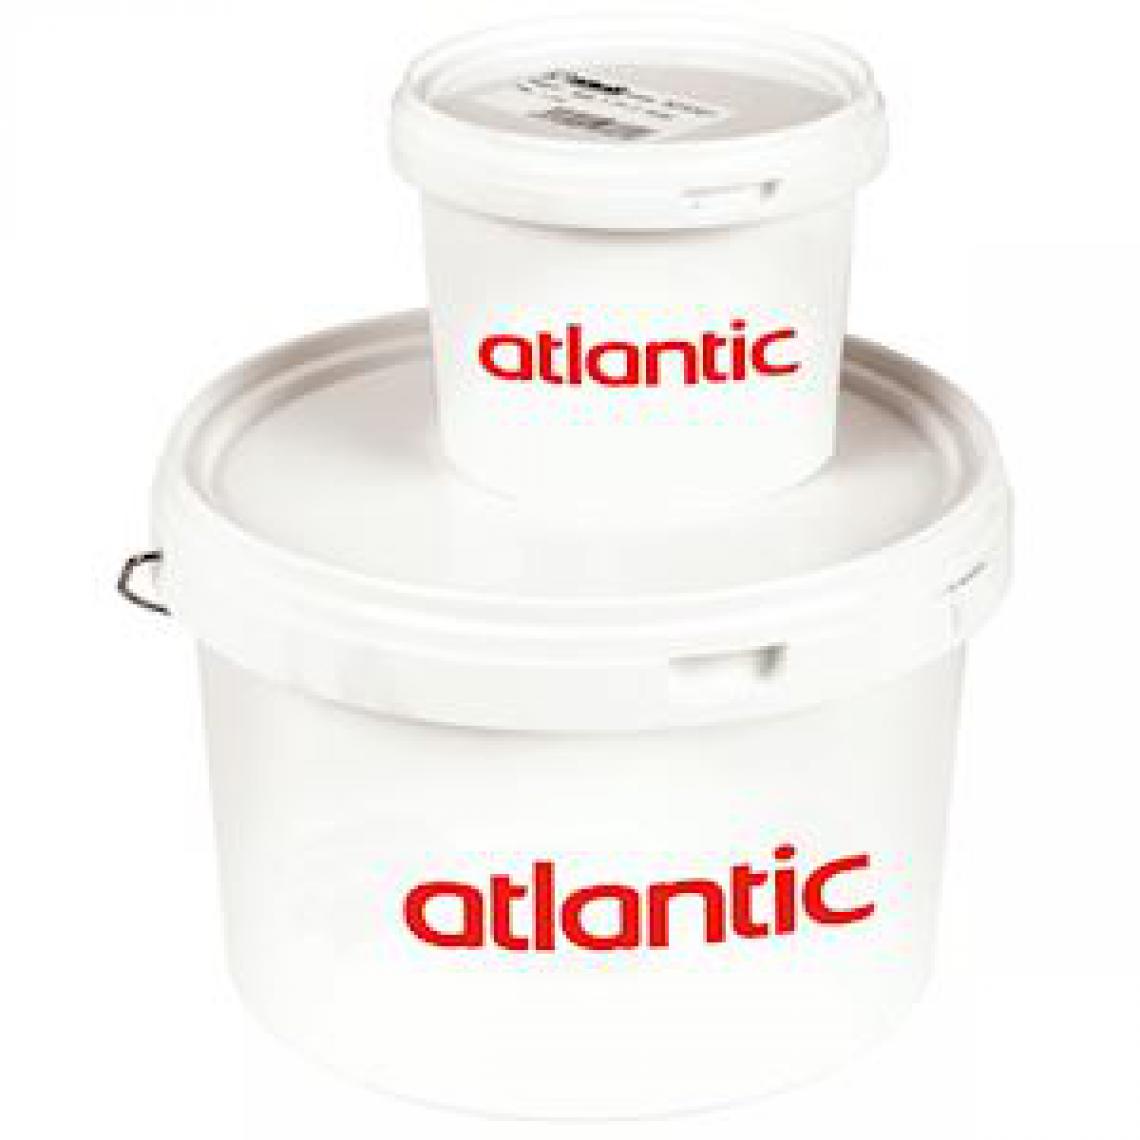 Atlantic - mastic d'étancheité - pour réseau de ventilation - pot de 1kg - atlantic 523381 - Grille d'aération